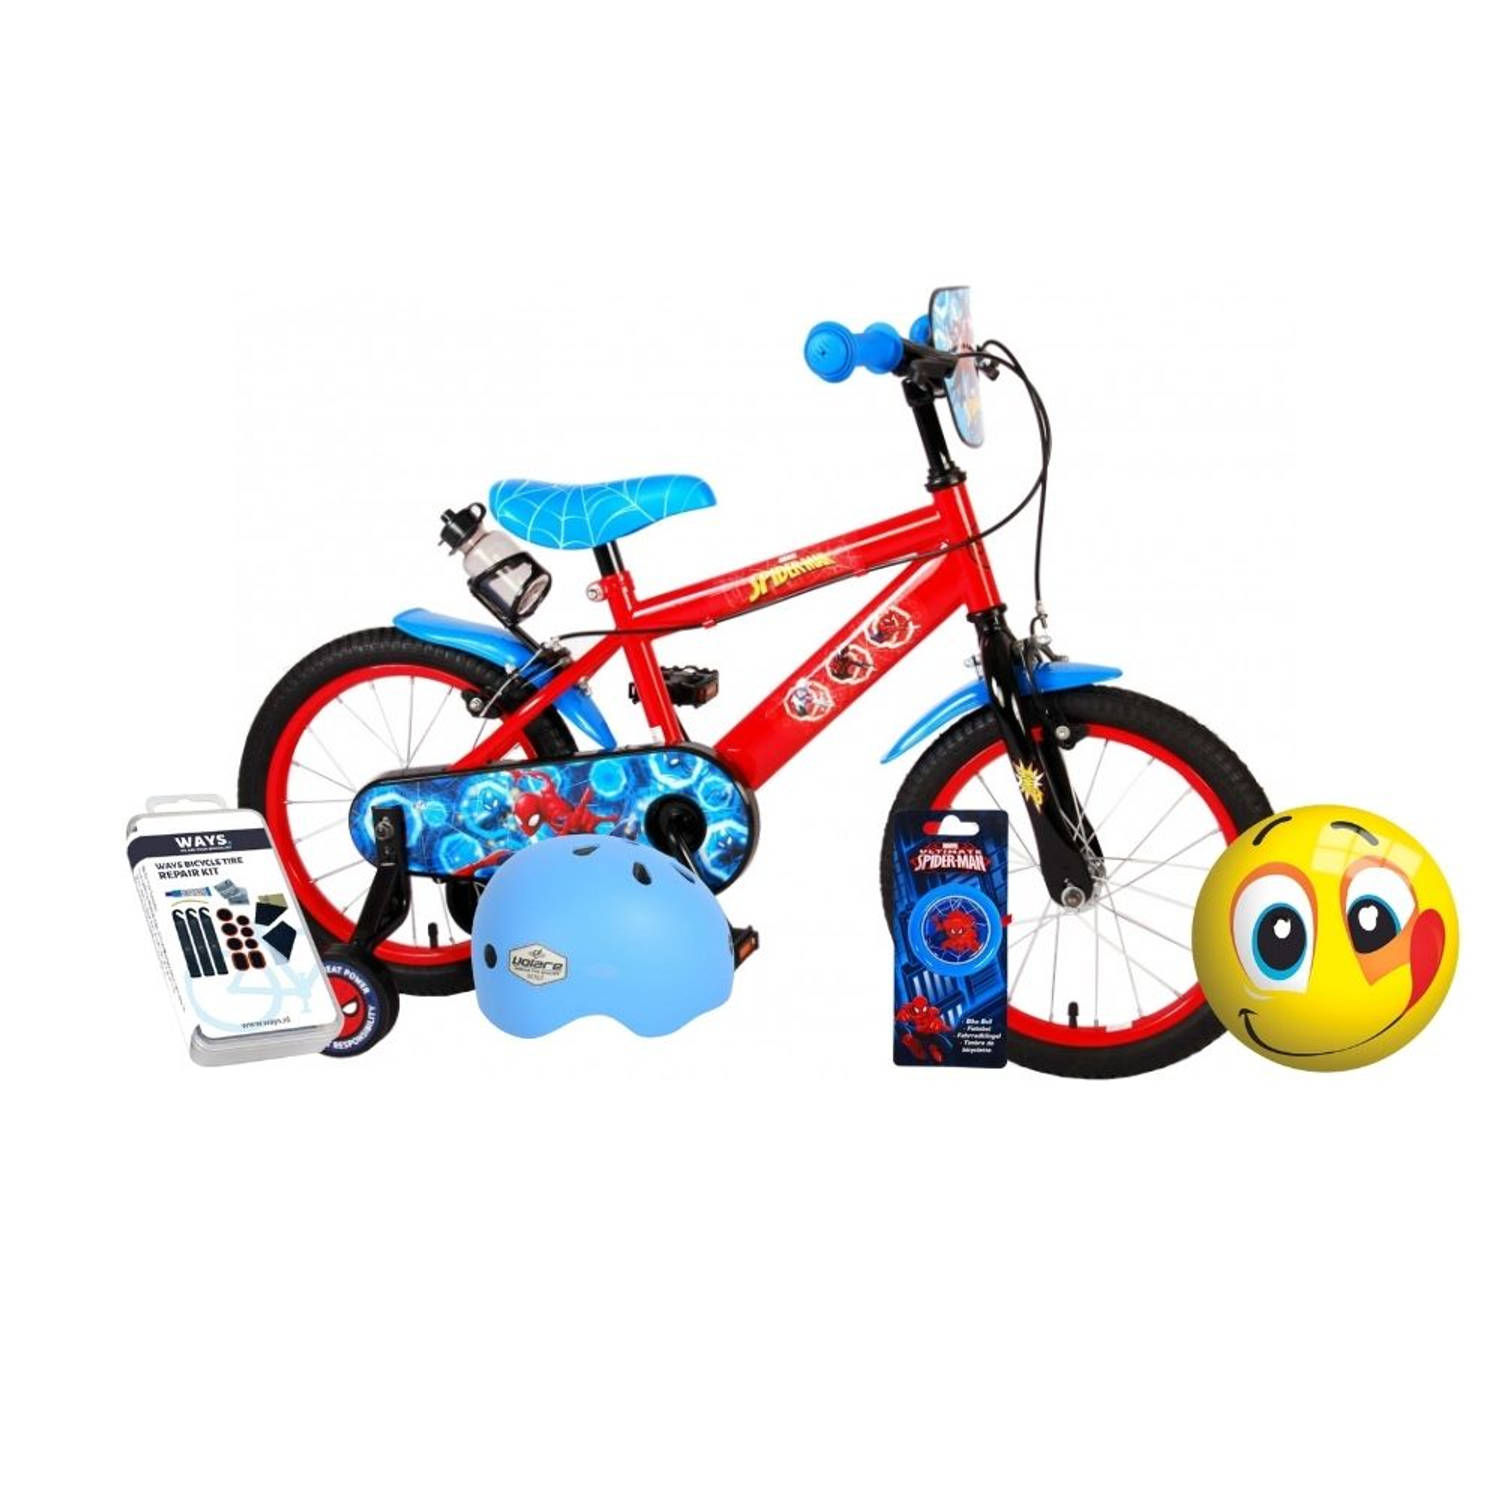 Volare Kinderfiets Spider-Man - 16 inch - Twee handremmen - Blauw/Rood - Inclusief fietshelm & accessoires